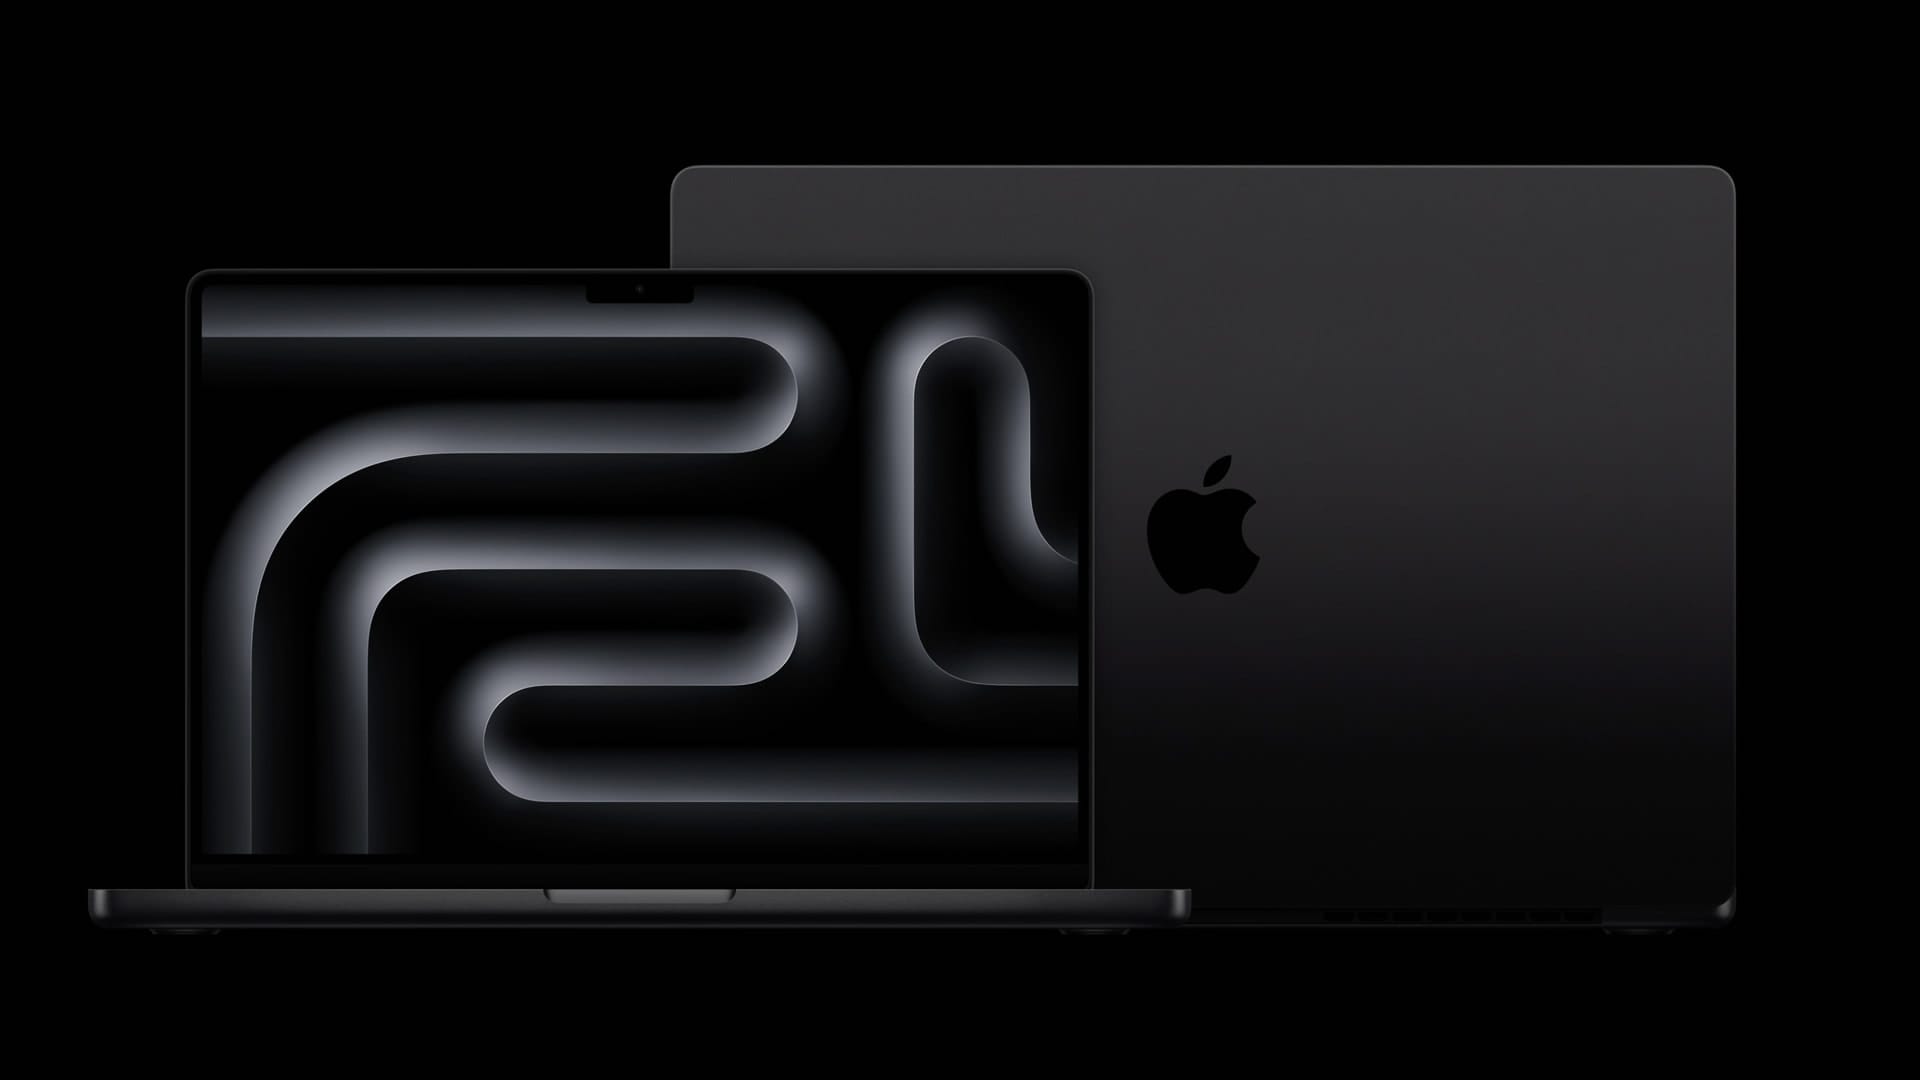 Apple-MacBook-Pro-2up-231030_Full-Bleed-Image.jpg.xlarge.jpg